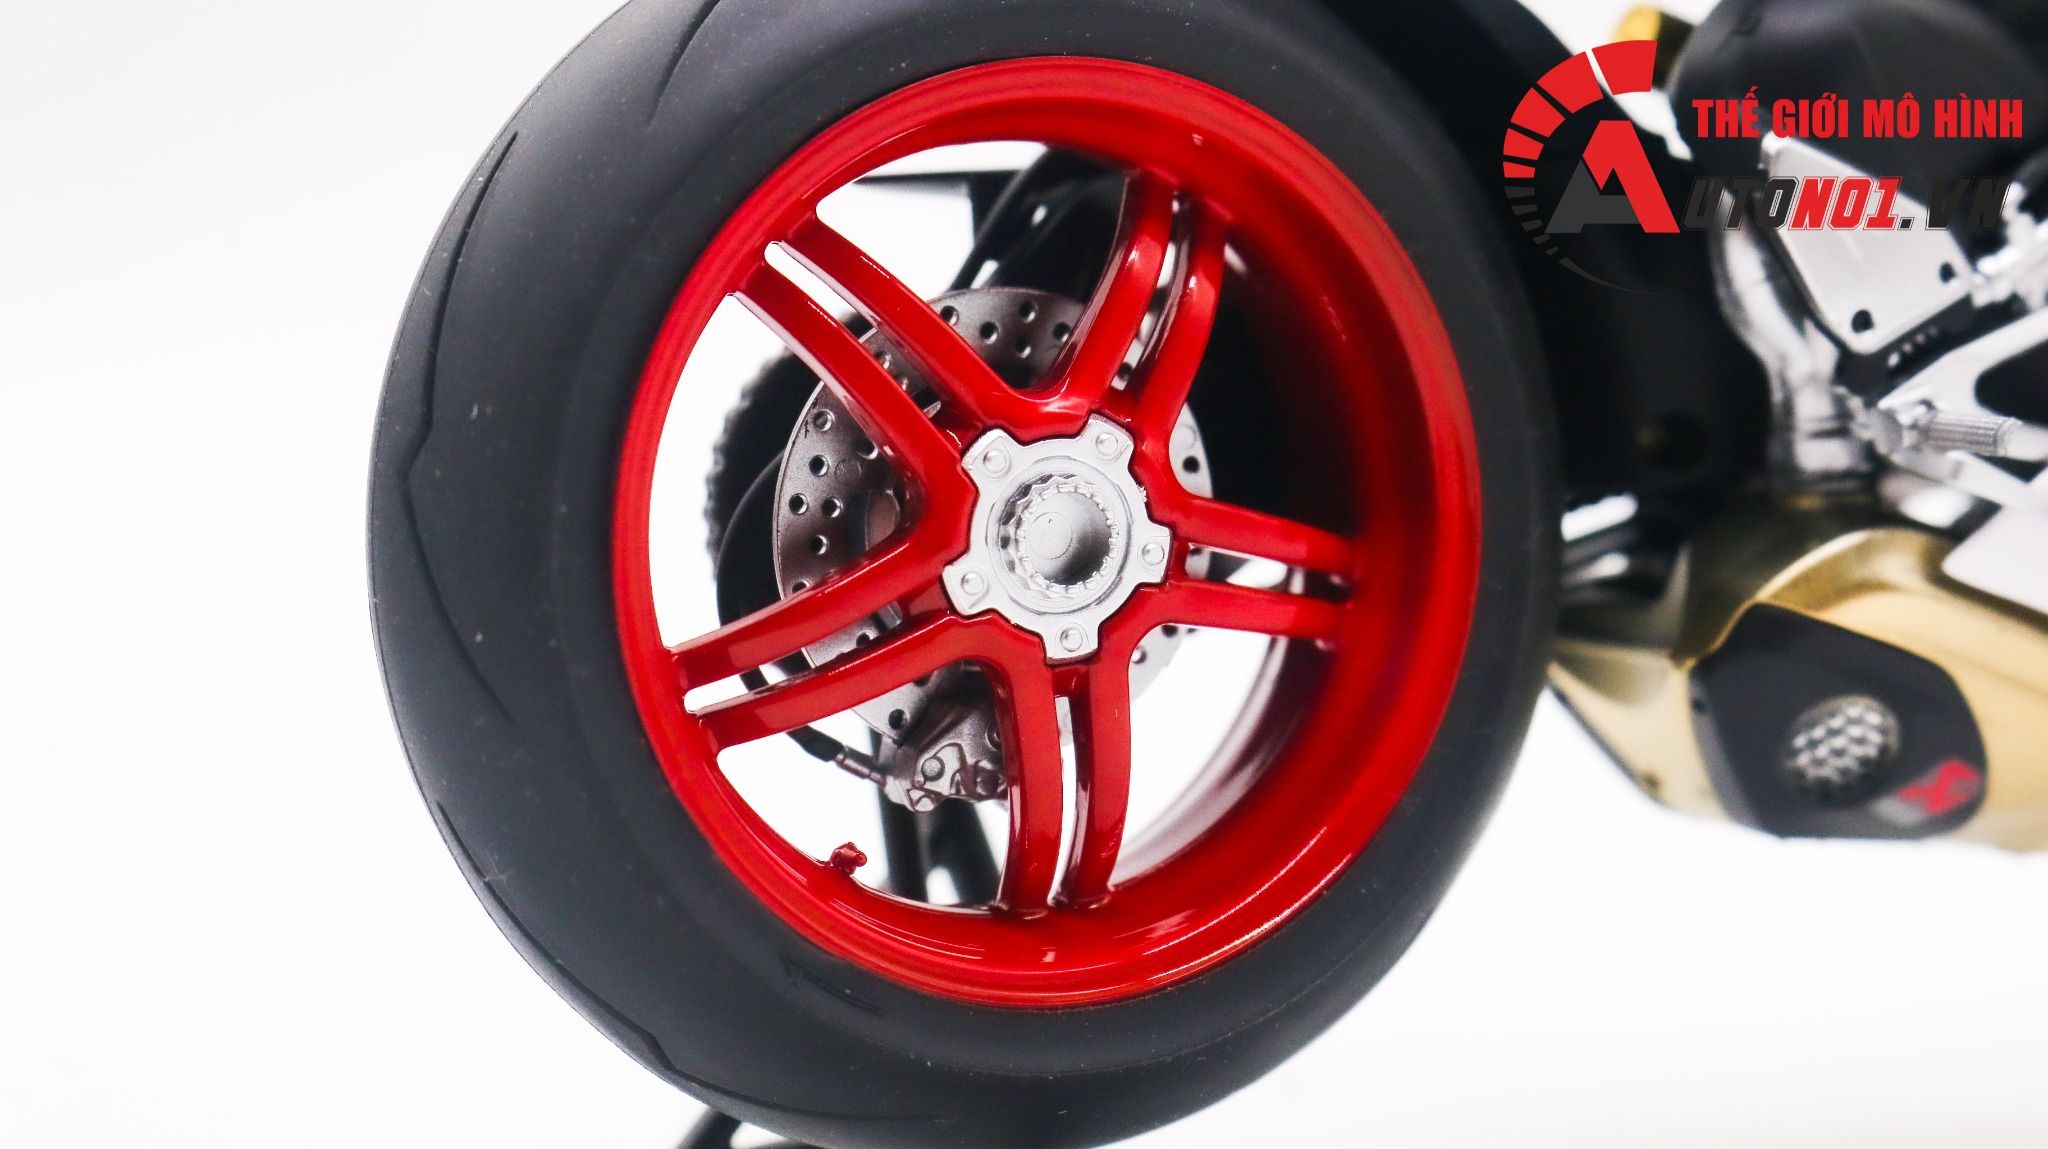  Mô hình xe cao cấp Ducati Superleggera V4 độ nồi khô white tỉ lệ 1:12 Tamiya D234D 